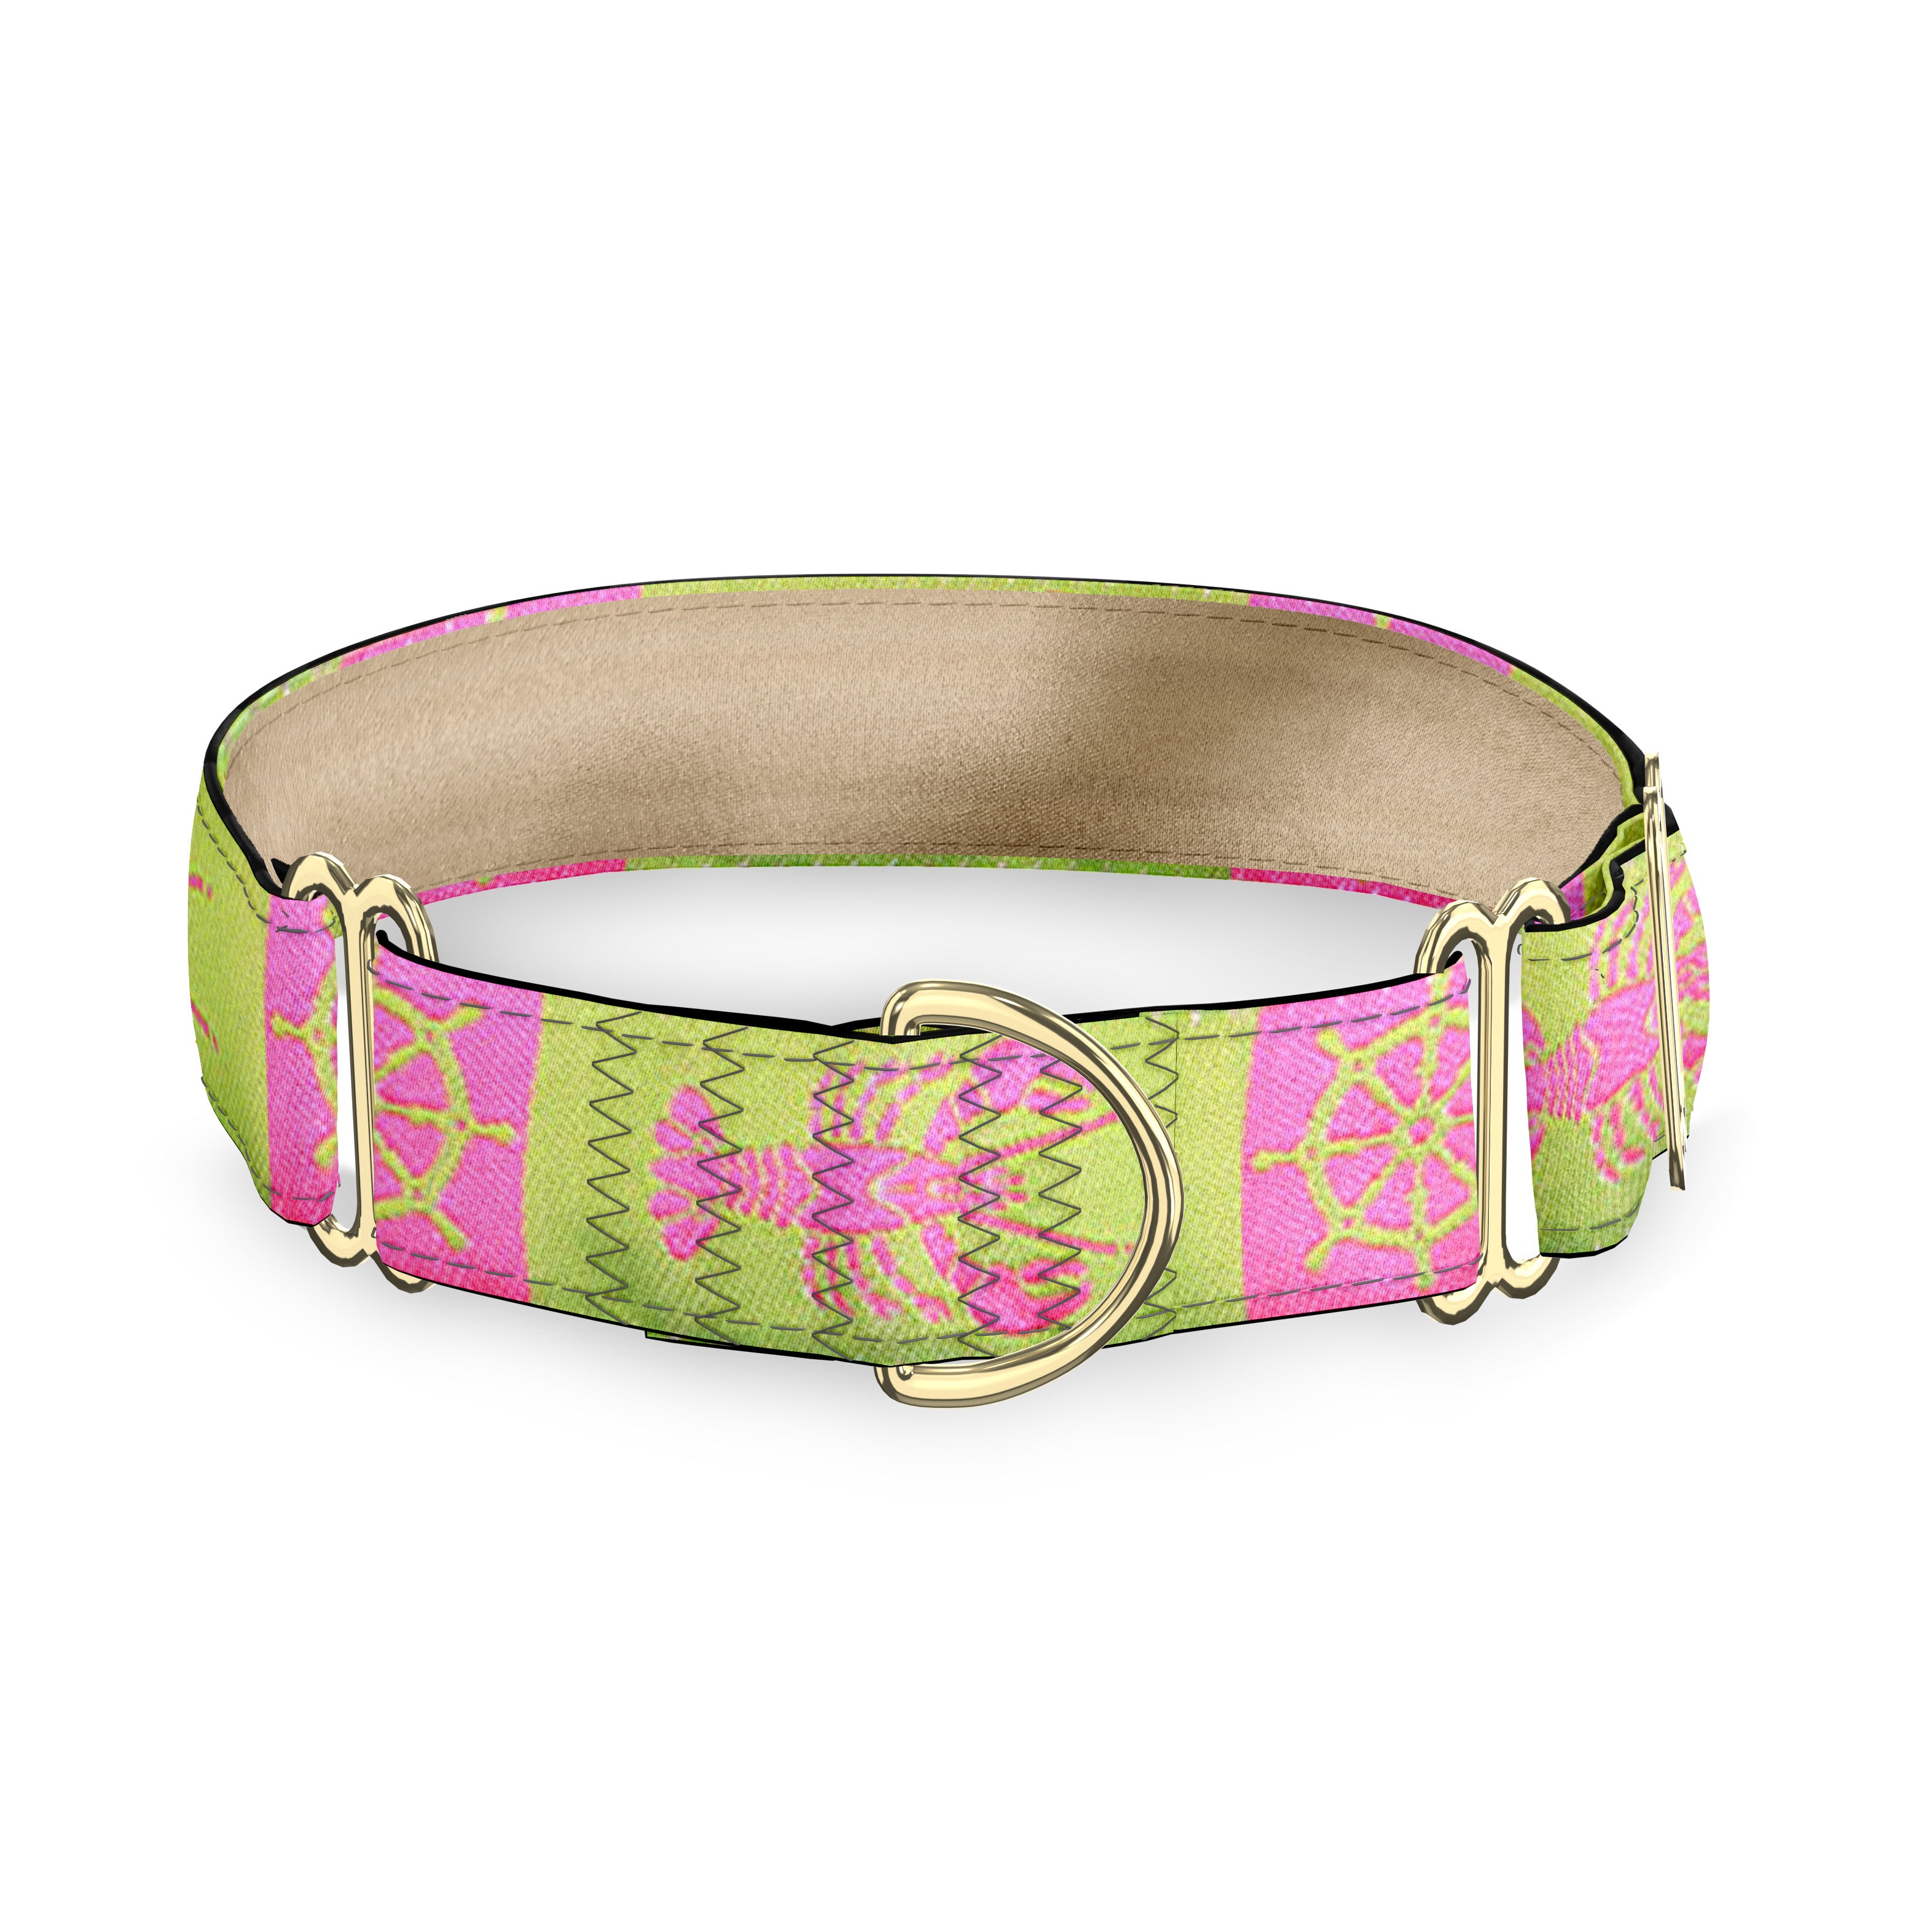 Kennebunkport Pink 1" Dog Collar